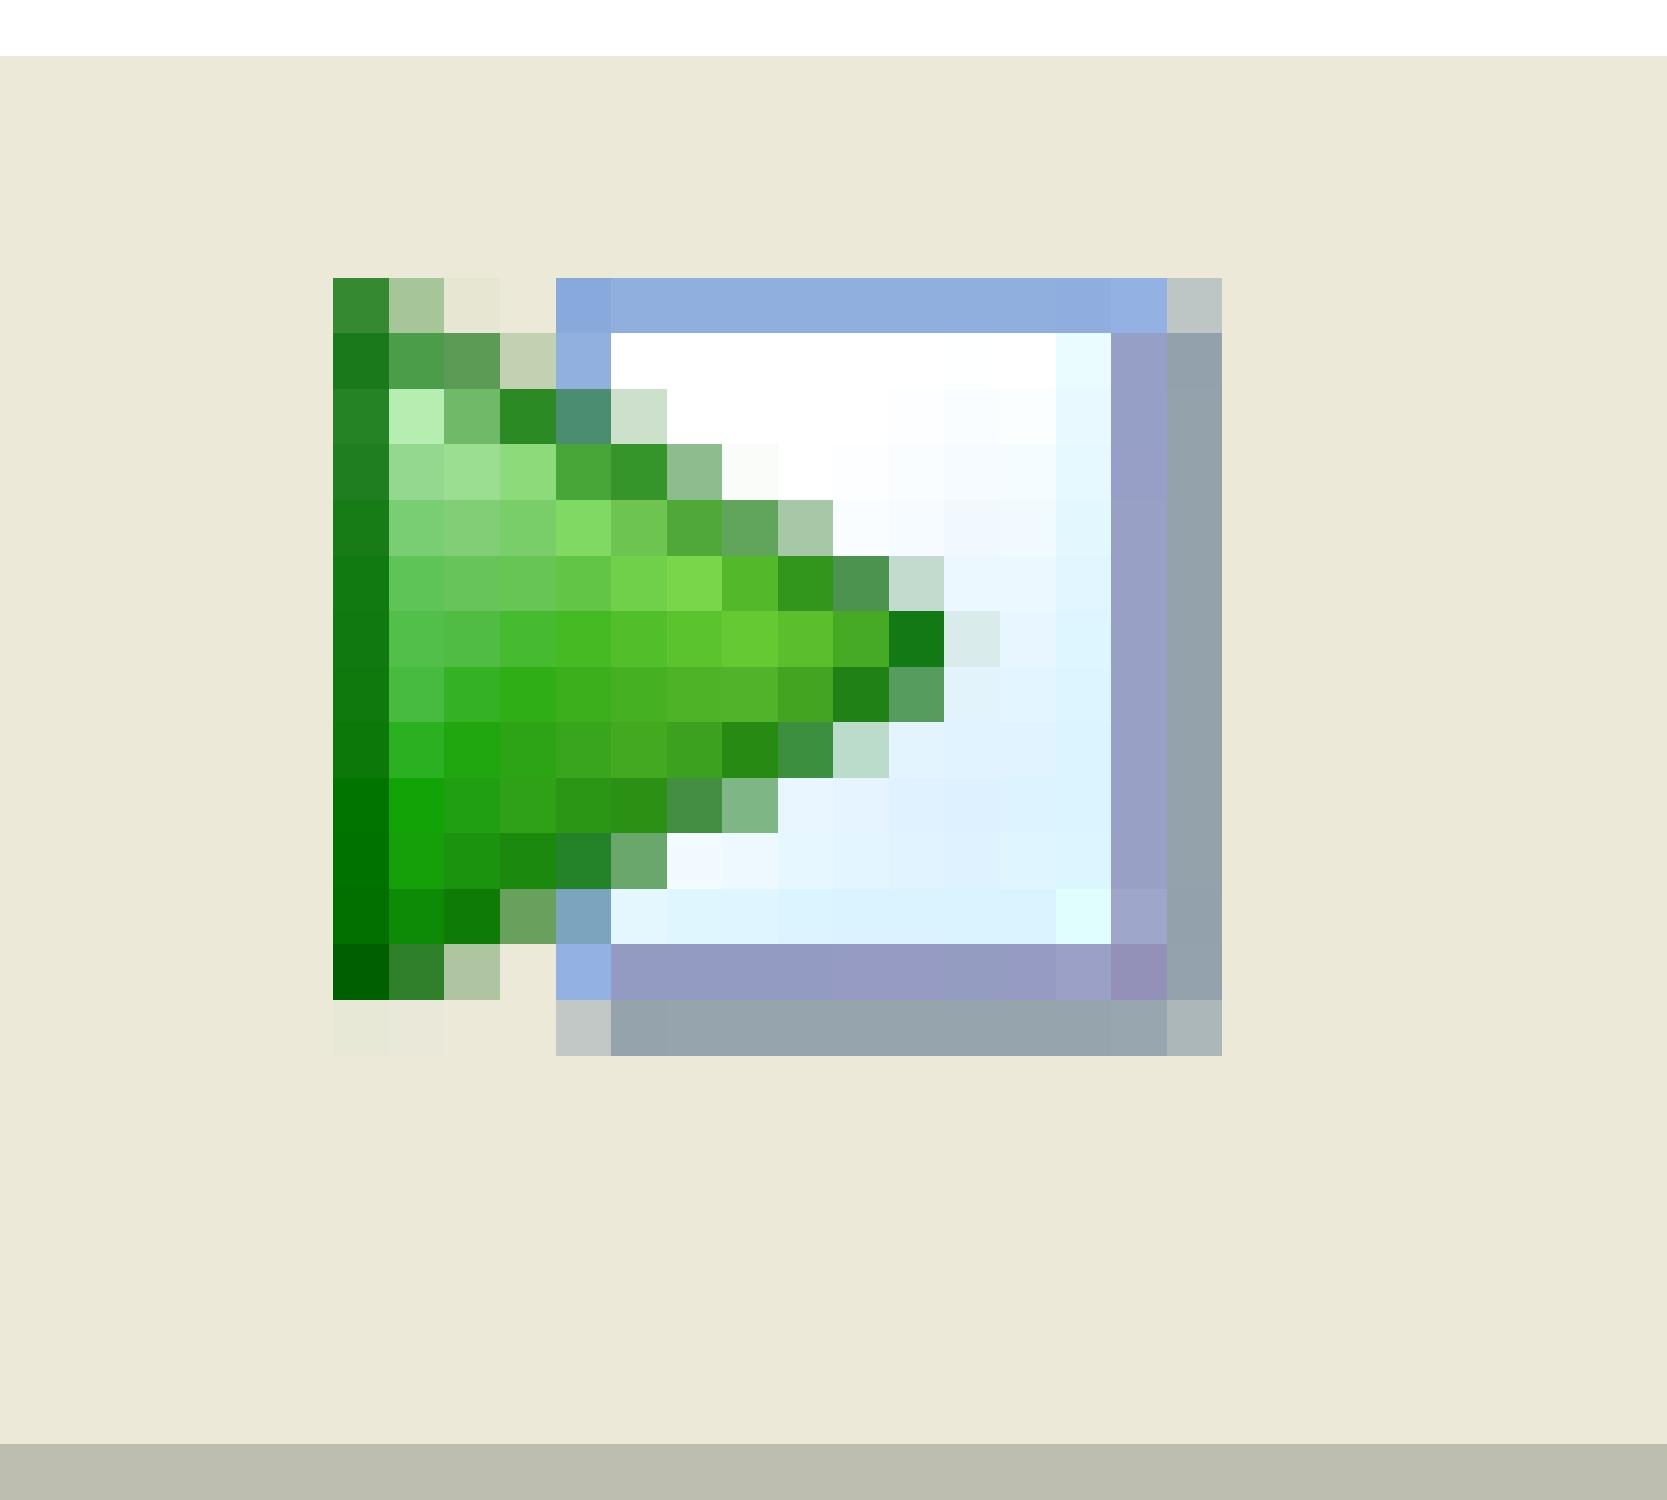 1.2 Ausführen des M-Files Ein M-File kann ausgeführt werden, indem man im Editor oben auf das weiße Blatt mit dem grünen Pfeil klickt, oder indem man im Command Window den Namen des Programms ohne